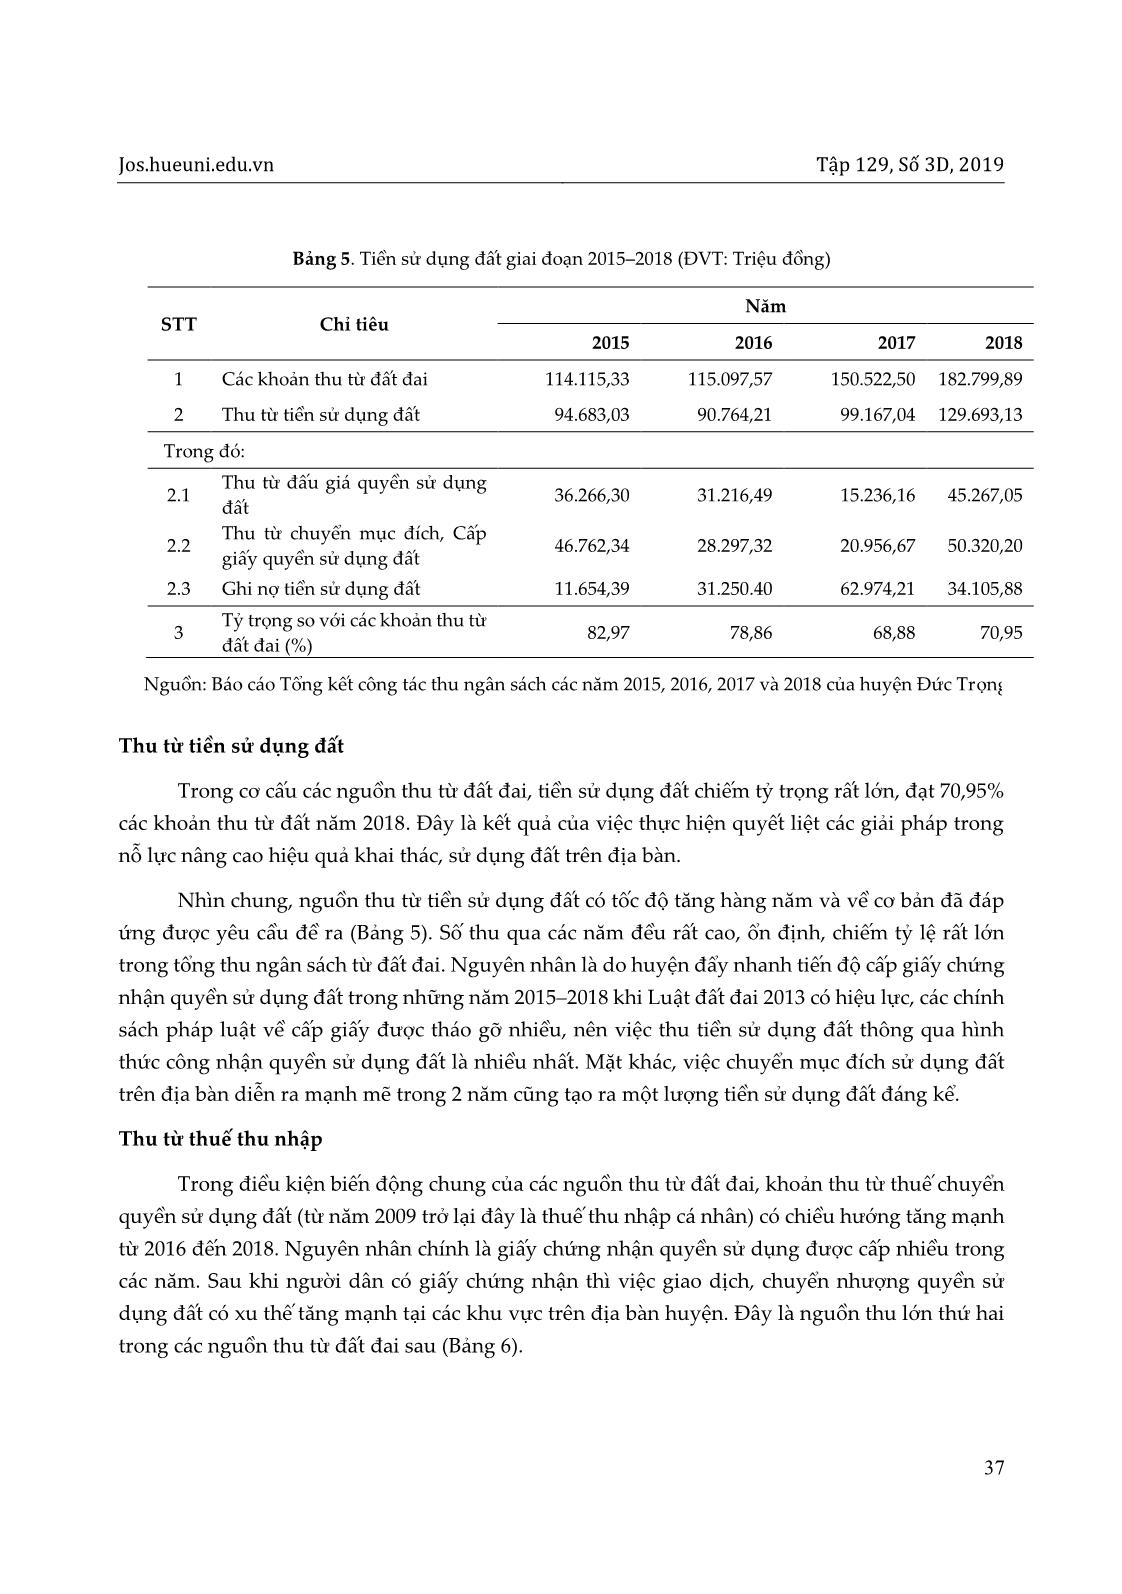 Tình hình khai thác nguồn thu tài chính từ đất đai tại huyện Đức Trọng, tỉnh Lâm Đồng trang 7